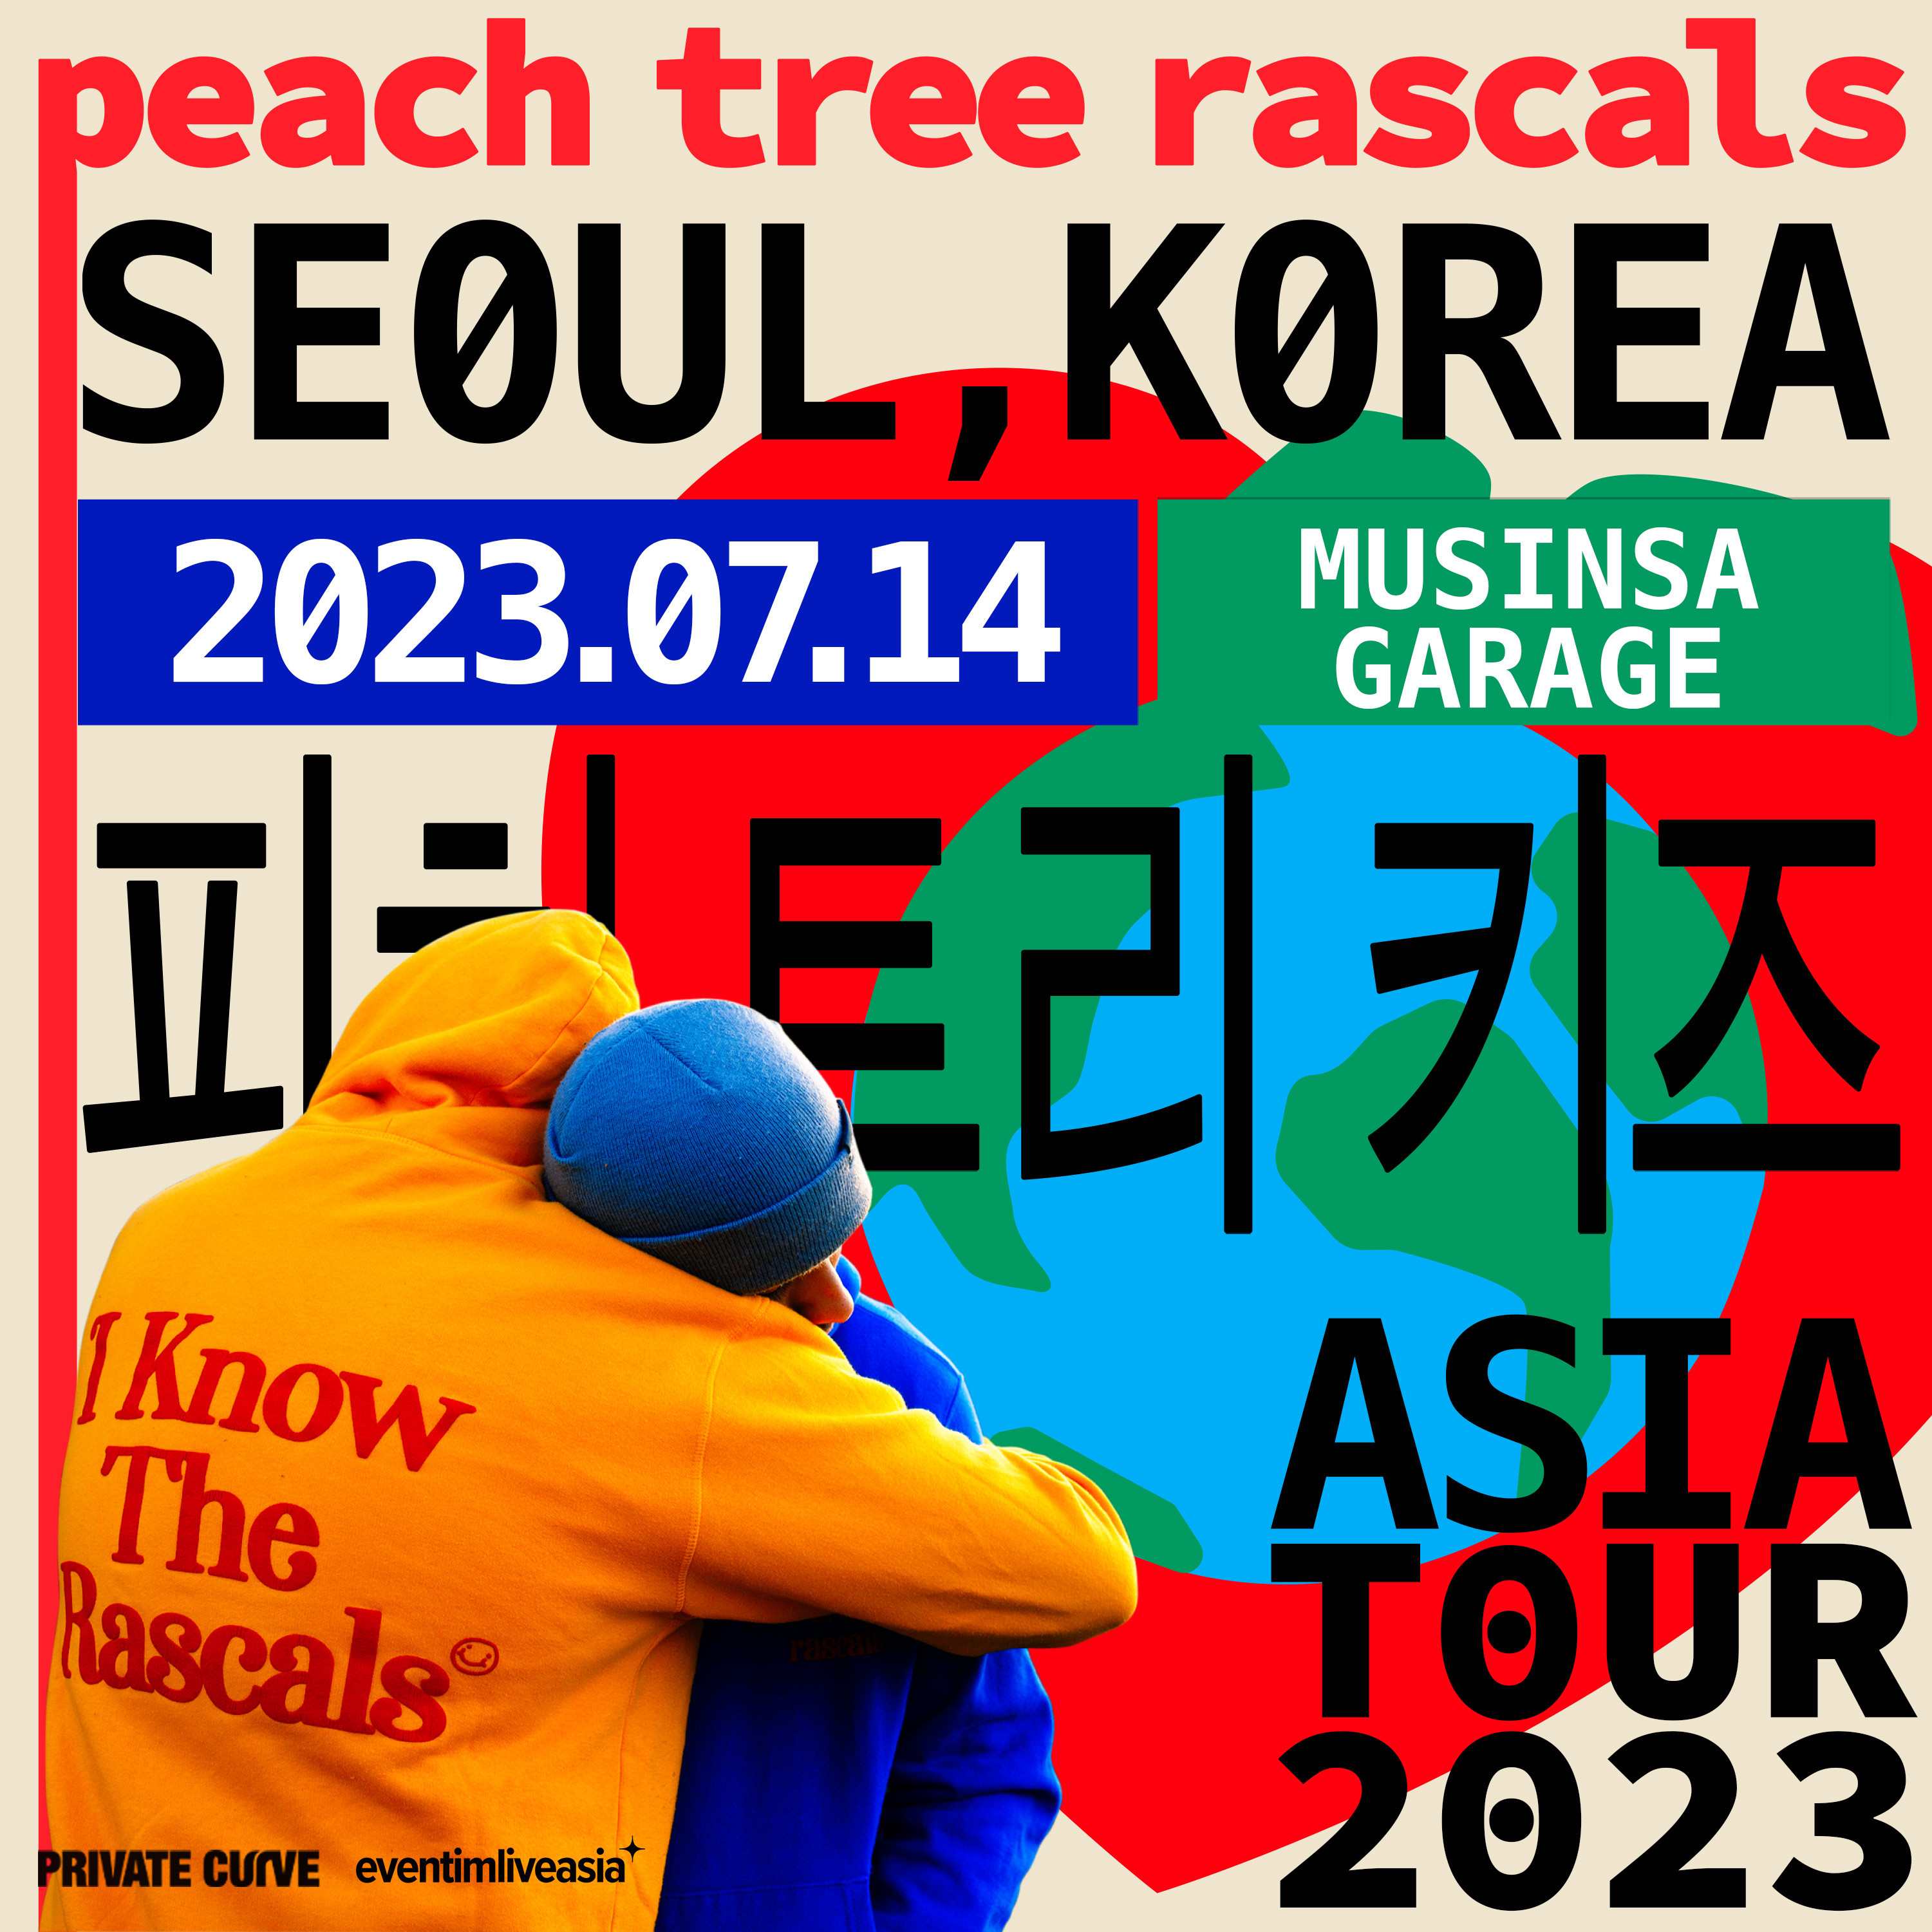 [공연안내] 피치트리라스칼스 내한공연  <Peach Tree Rascals LIVE IN SEOUL>